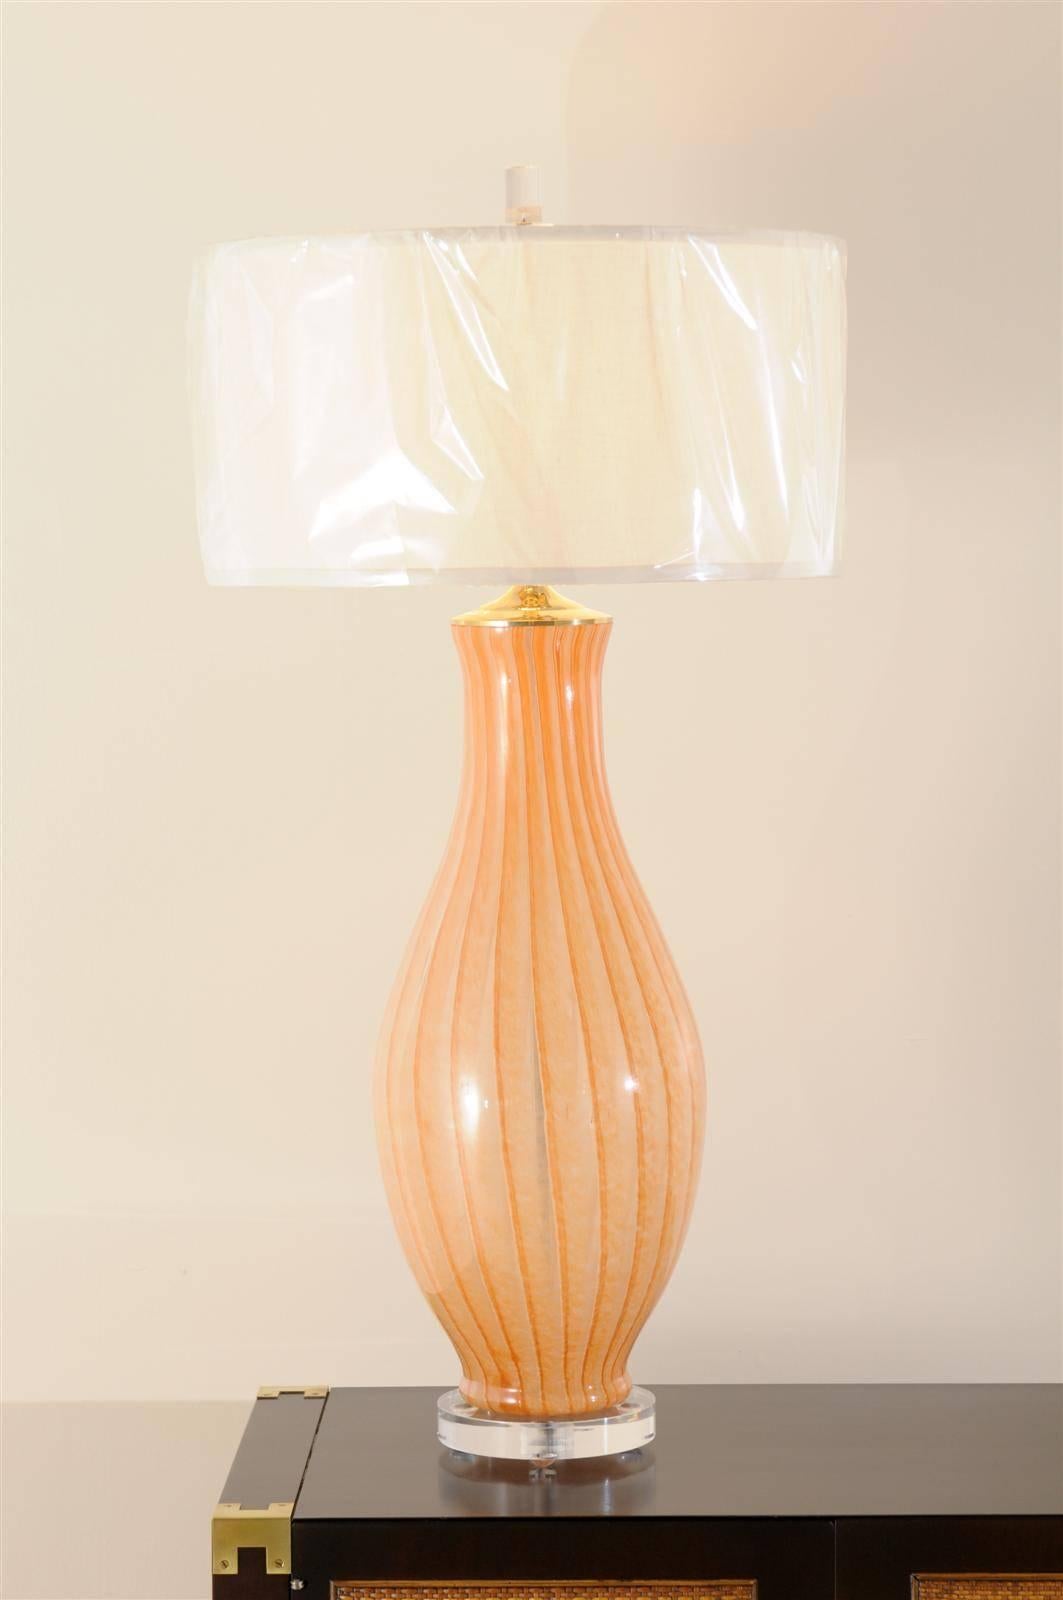 Ein wunderschönes Paar monumentaler mundgeblasener Murano-Lampen, um 1970. Exquisite Form und Farbe. Atemberaubender Schmuck! Ausgezeichneter restaurierter Zustand. Die Lampen wurden neu verkabelt und mit einem neuen Lucite-Sockel versehen. Komplett